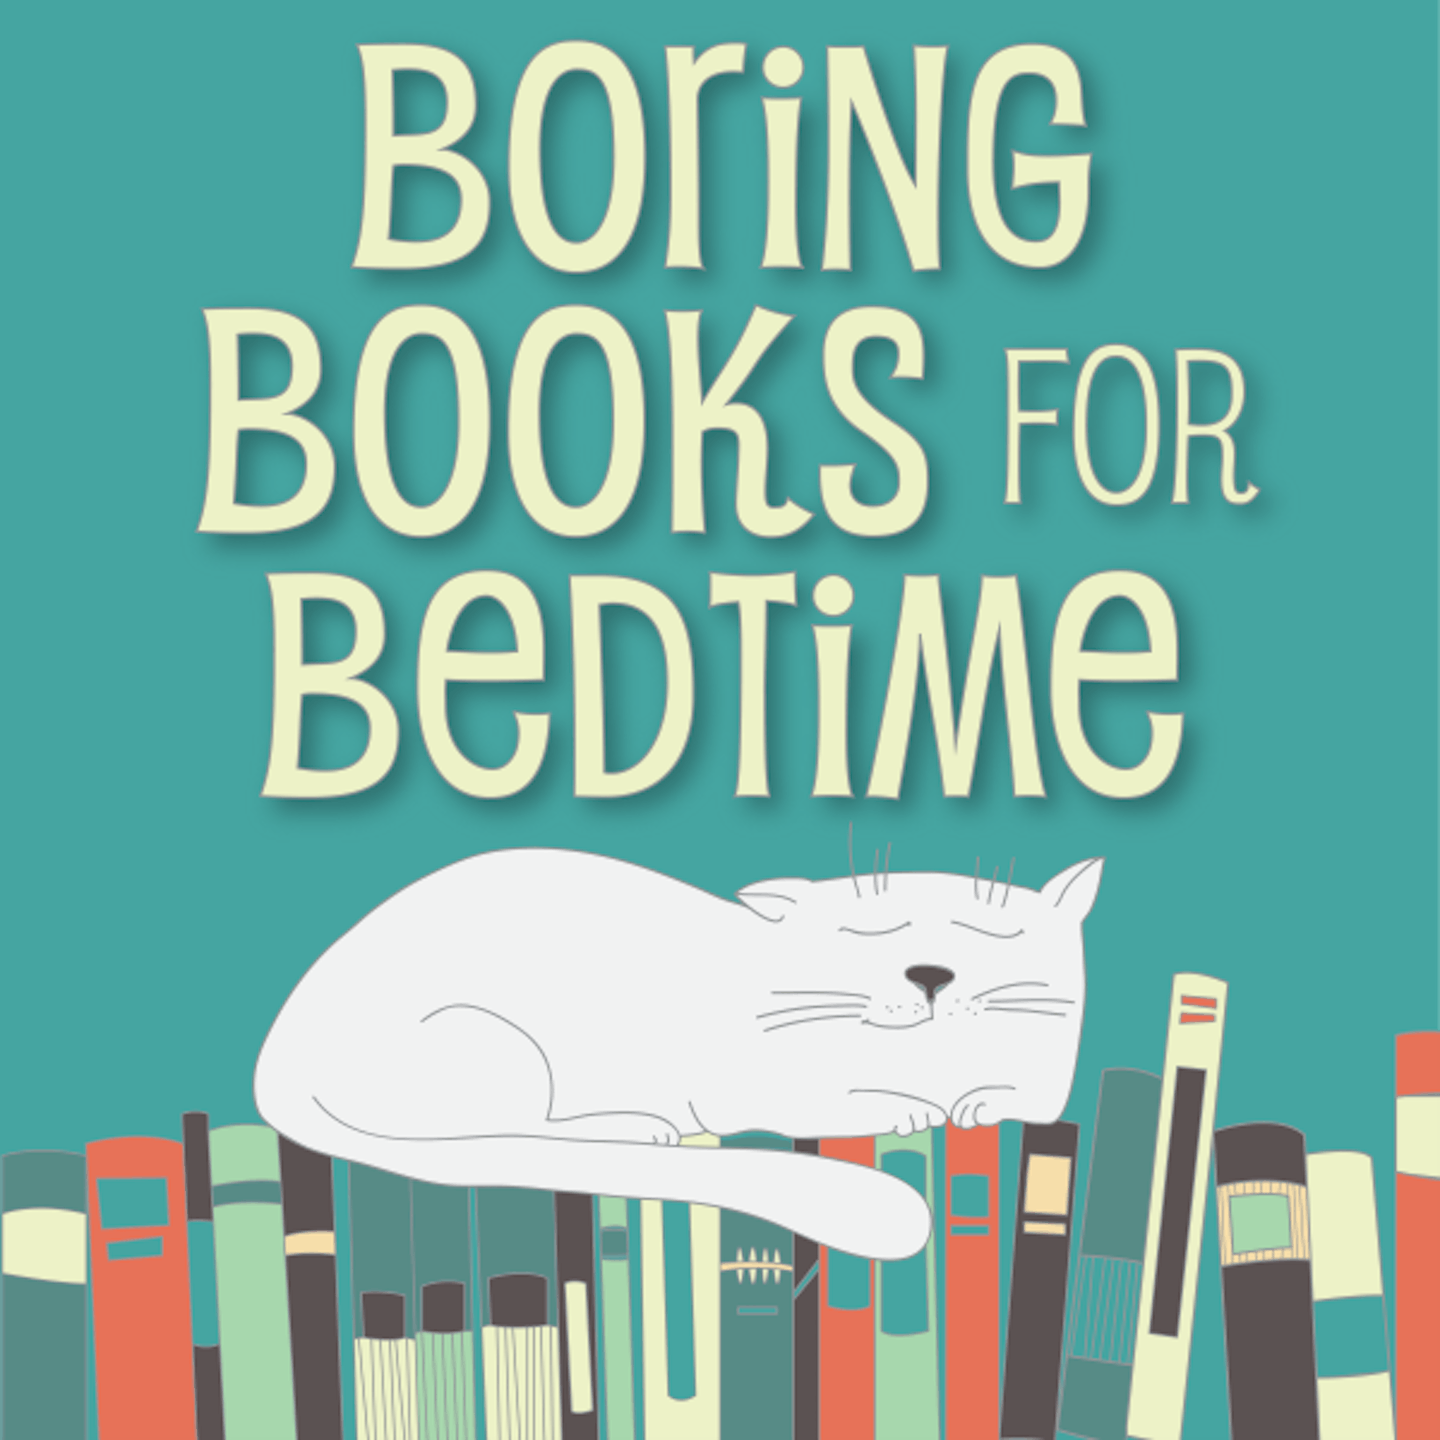 Boring books for bedtime